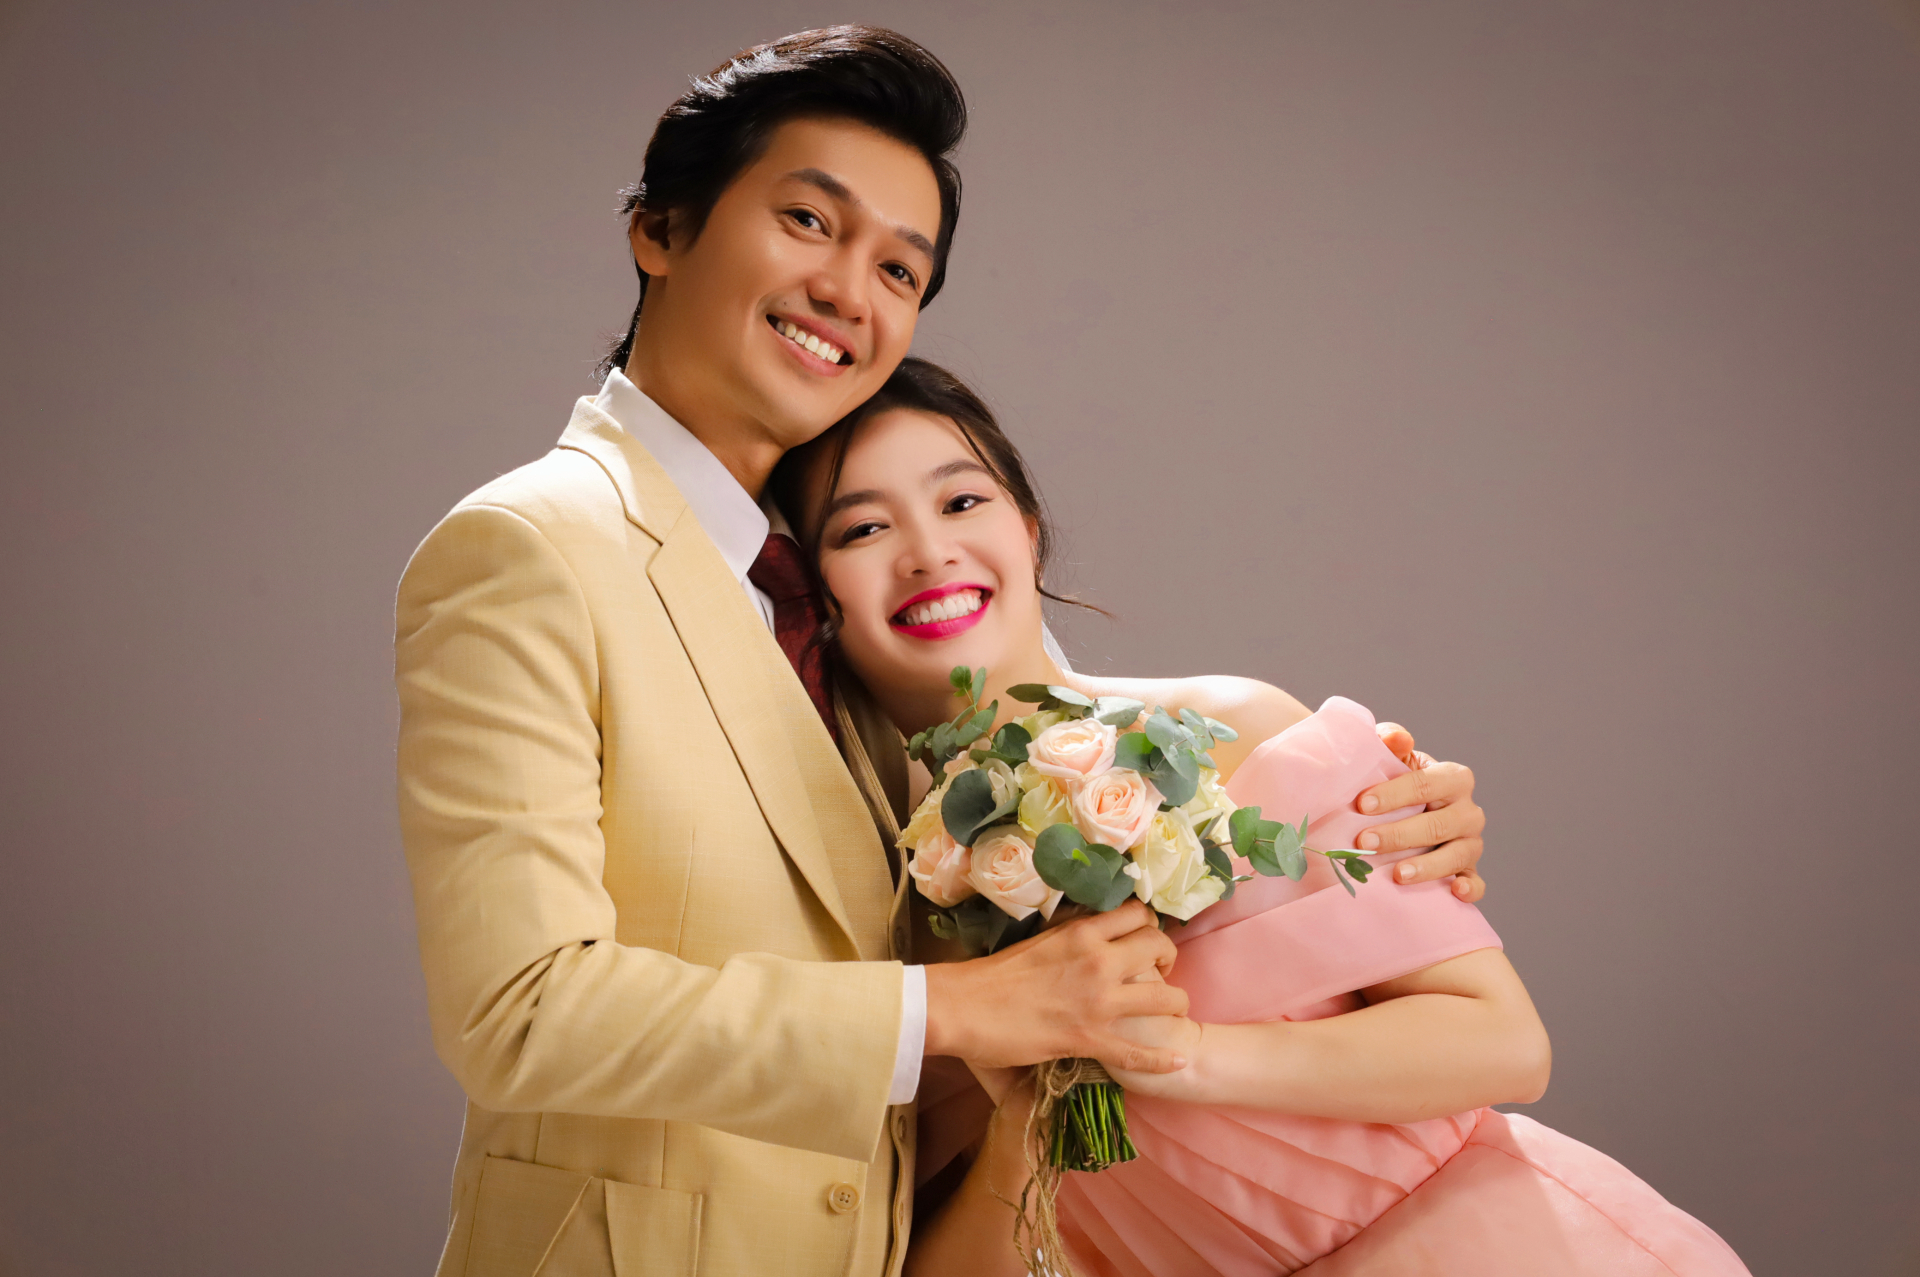 Làm vợ chồng trong phim mới, nhưng Lê Khánh và Quang Tuấn đồng loạt chia sẻ xúc động về gia đình nhỏ ngoài đời - ảnh 2